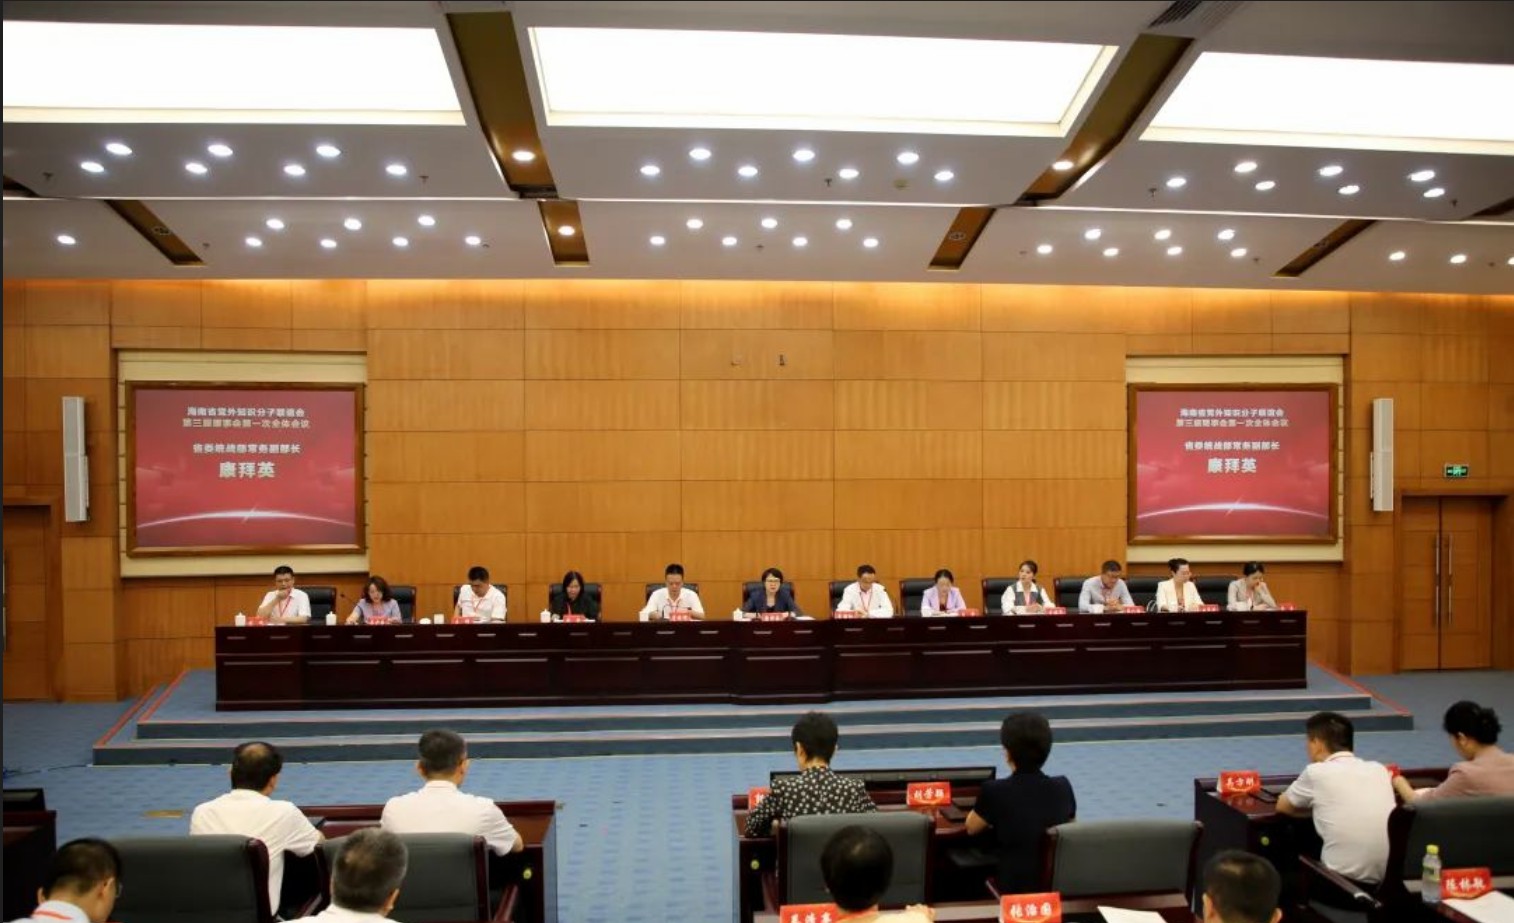 海南省黨外知識分子聯誼會第三屆理事會第一次全體會議在海口召開